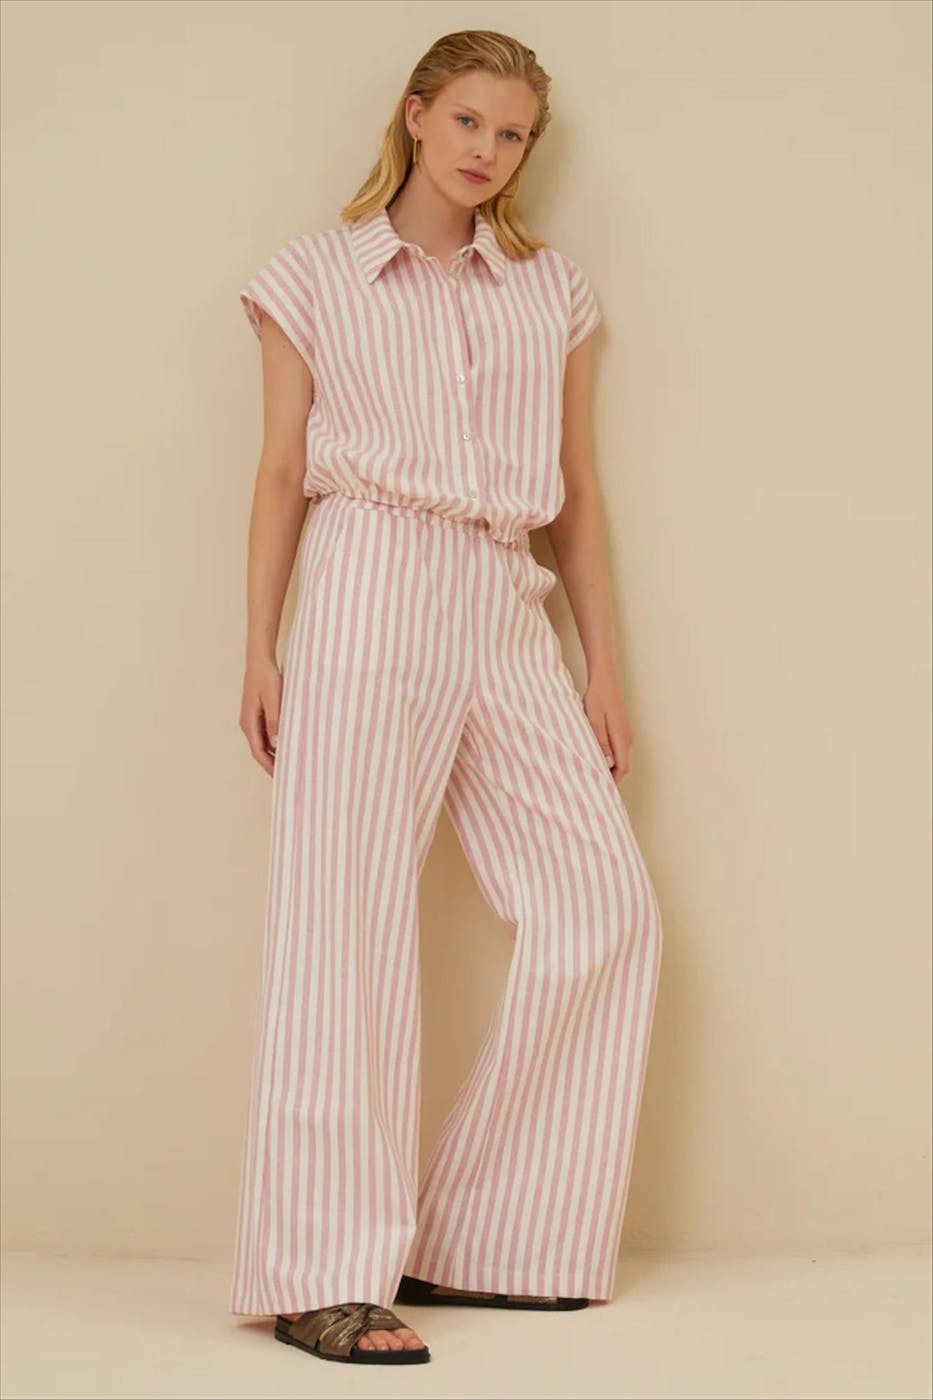 BY BAR - Ecru-Roze Bieke Stripe blouse